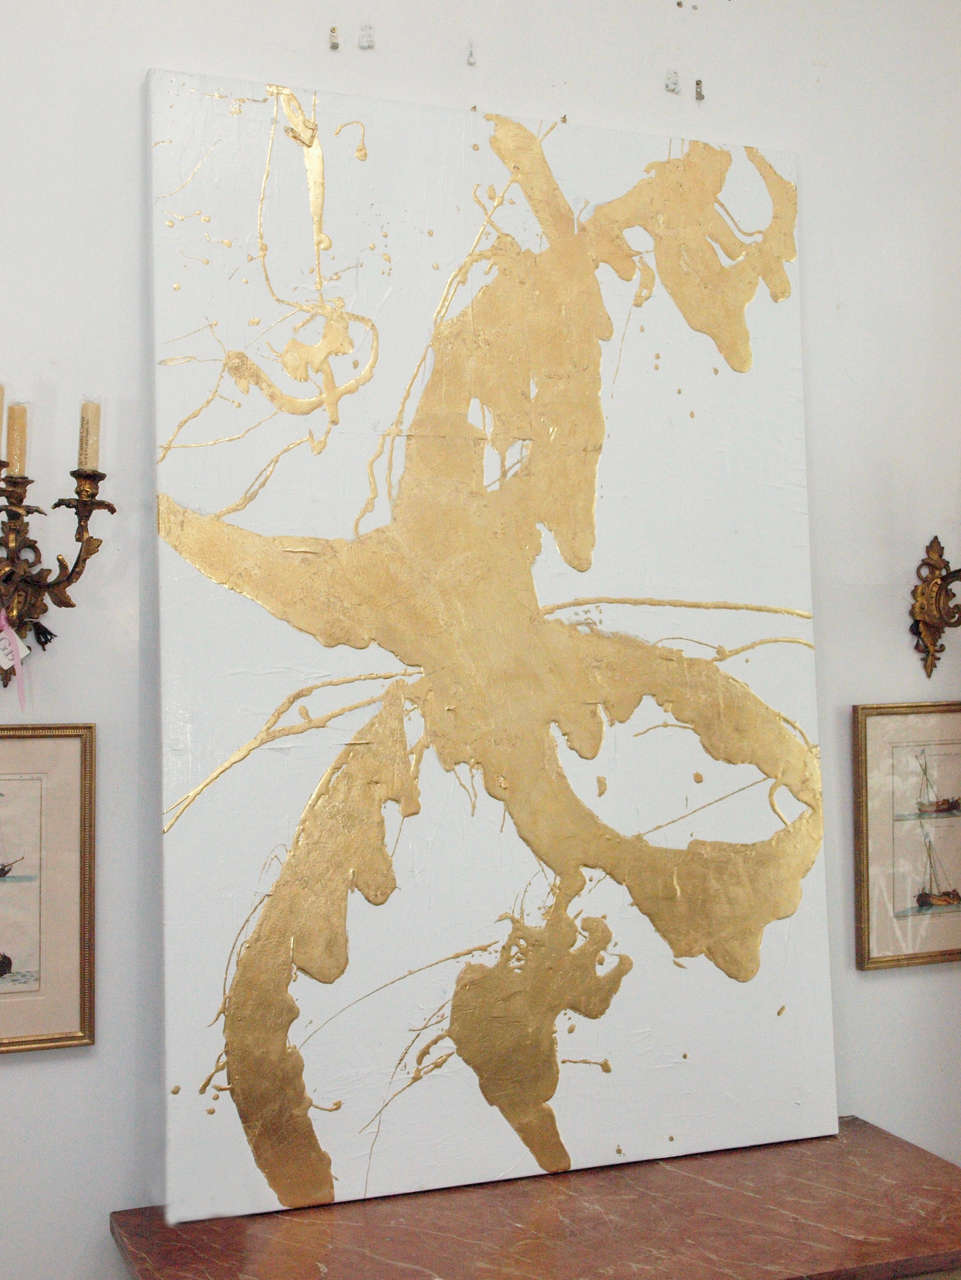 Multi-media, gold leaf painting by New Orleans artist, Jamie Meeks.